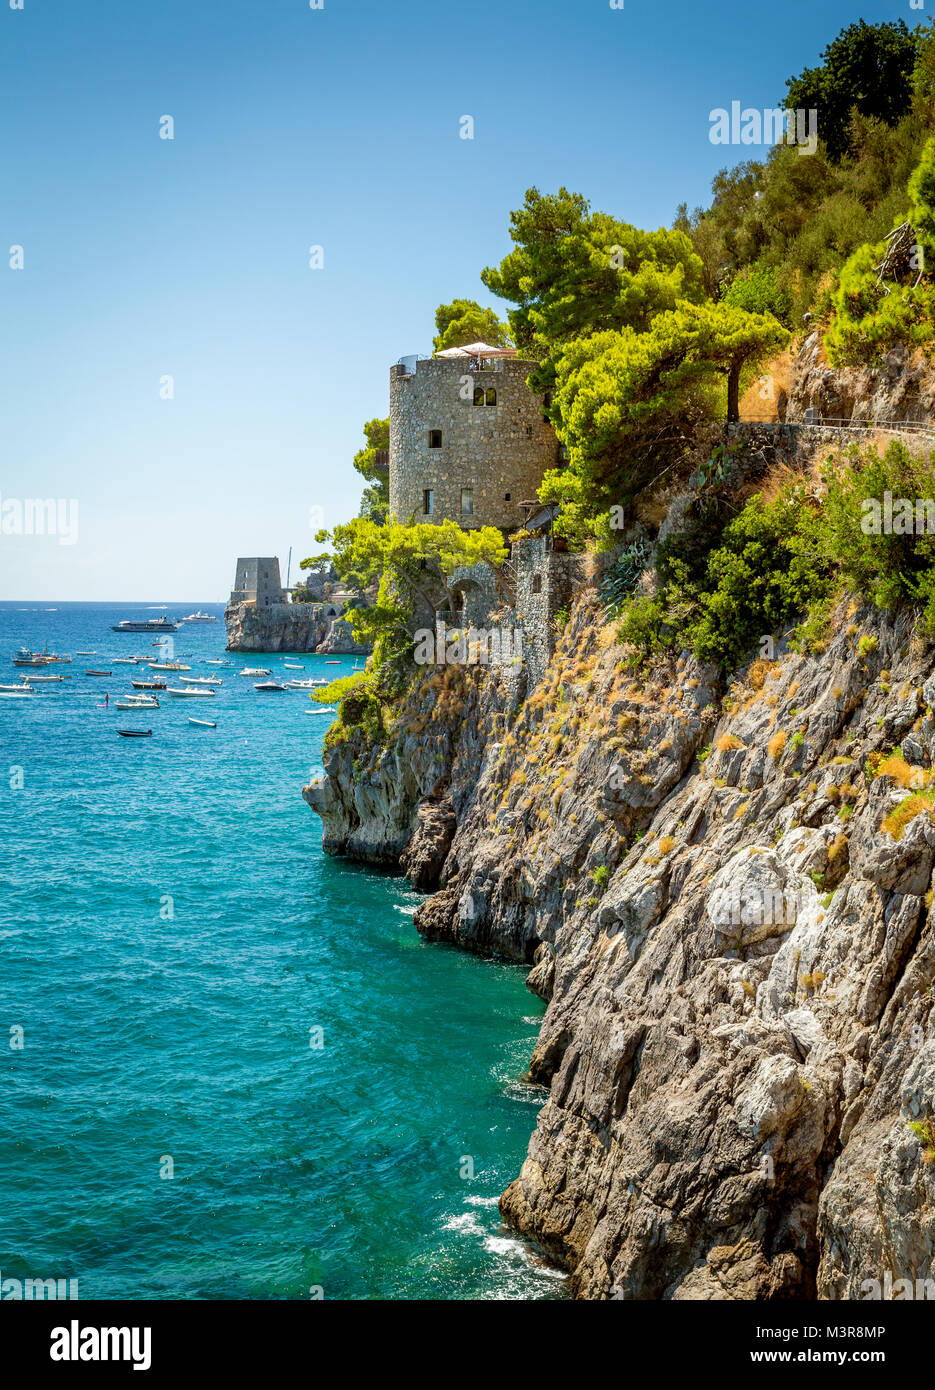 Costa di Amalfi - Positano, Italia Foto Stock